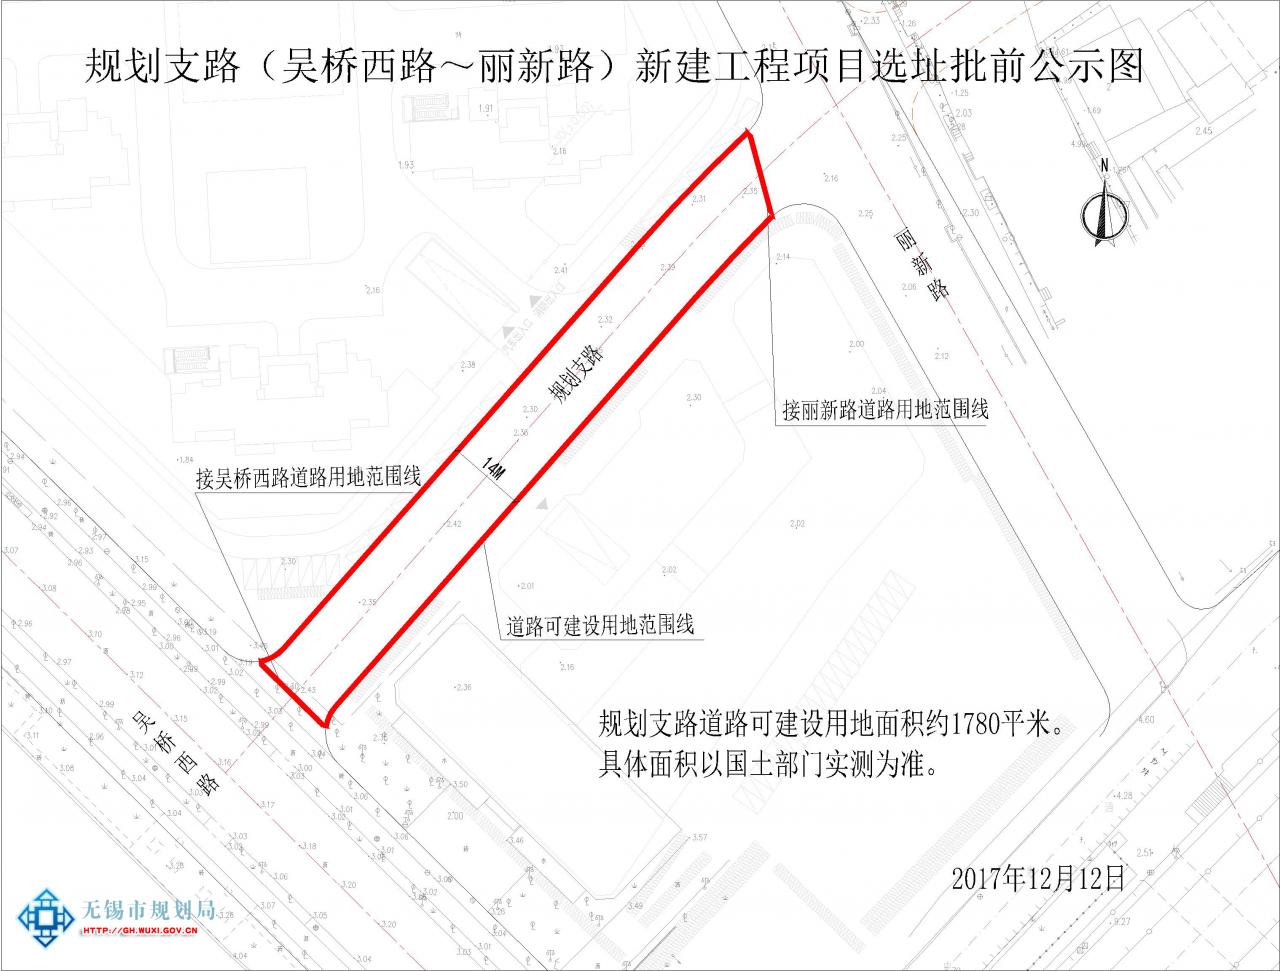 规划支路（吴桥西路-丽新路）新建工程项目规划选址意见书批前公示